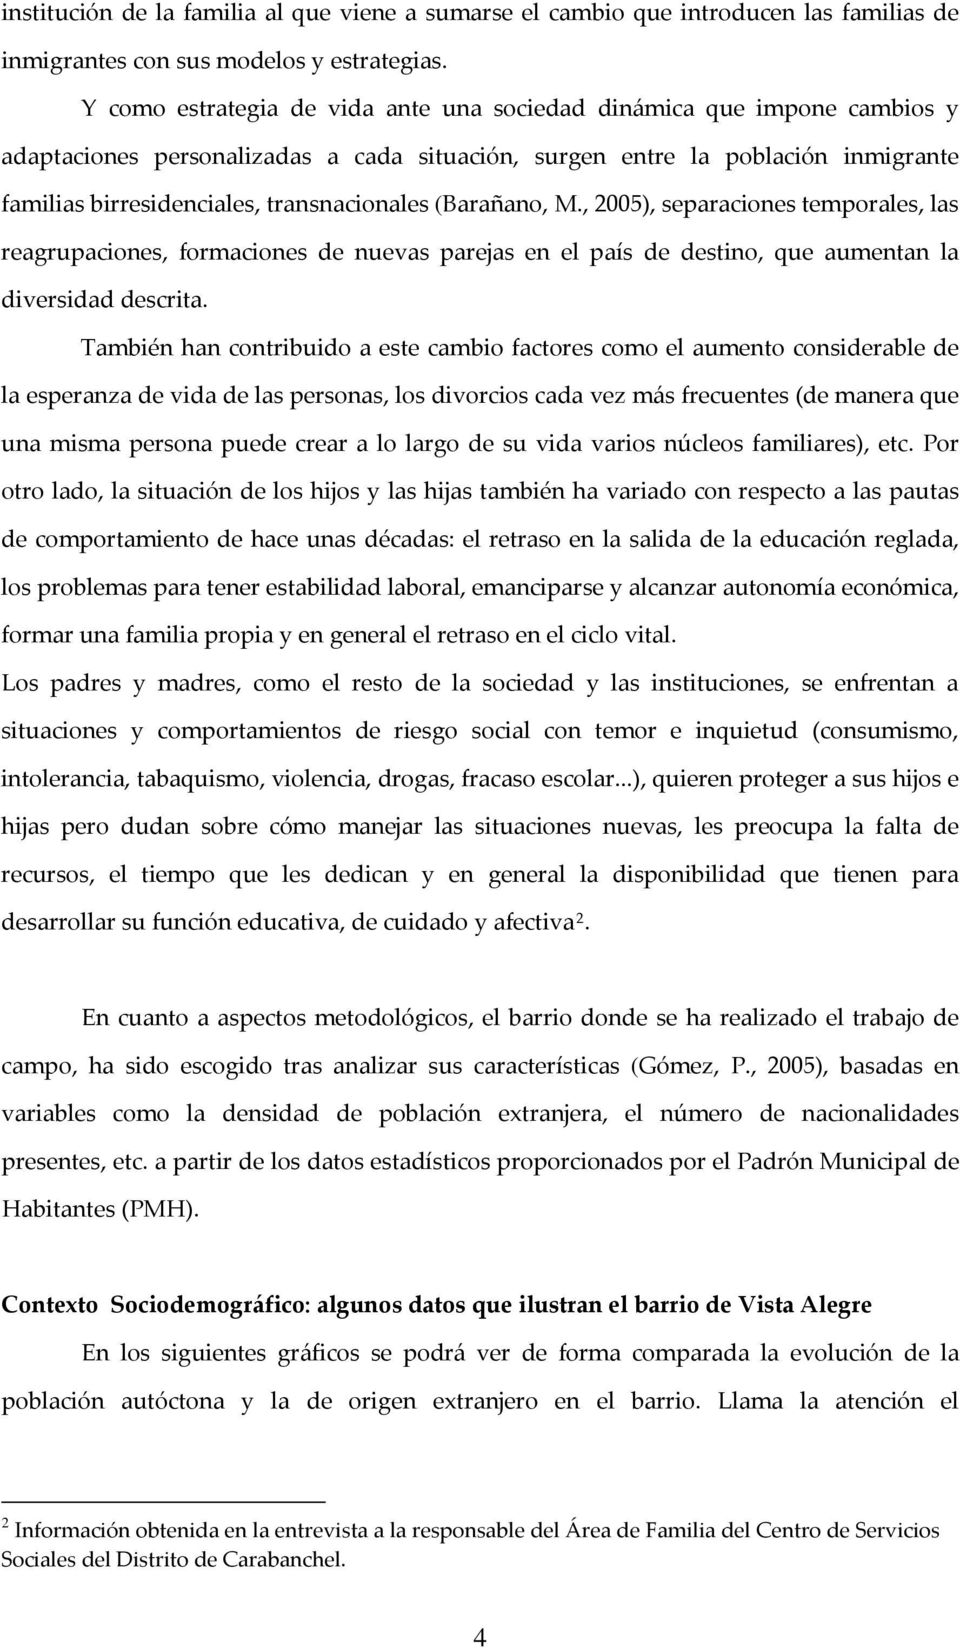 (Barañano, M., 2005), separaciones temporales, las reagrupaciones, formaciones de nuevas parejas en el país de destino, que aumentan la diversidad descrita.